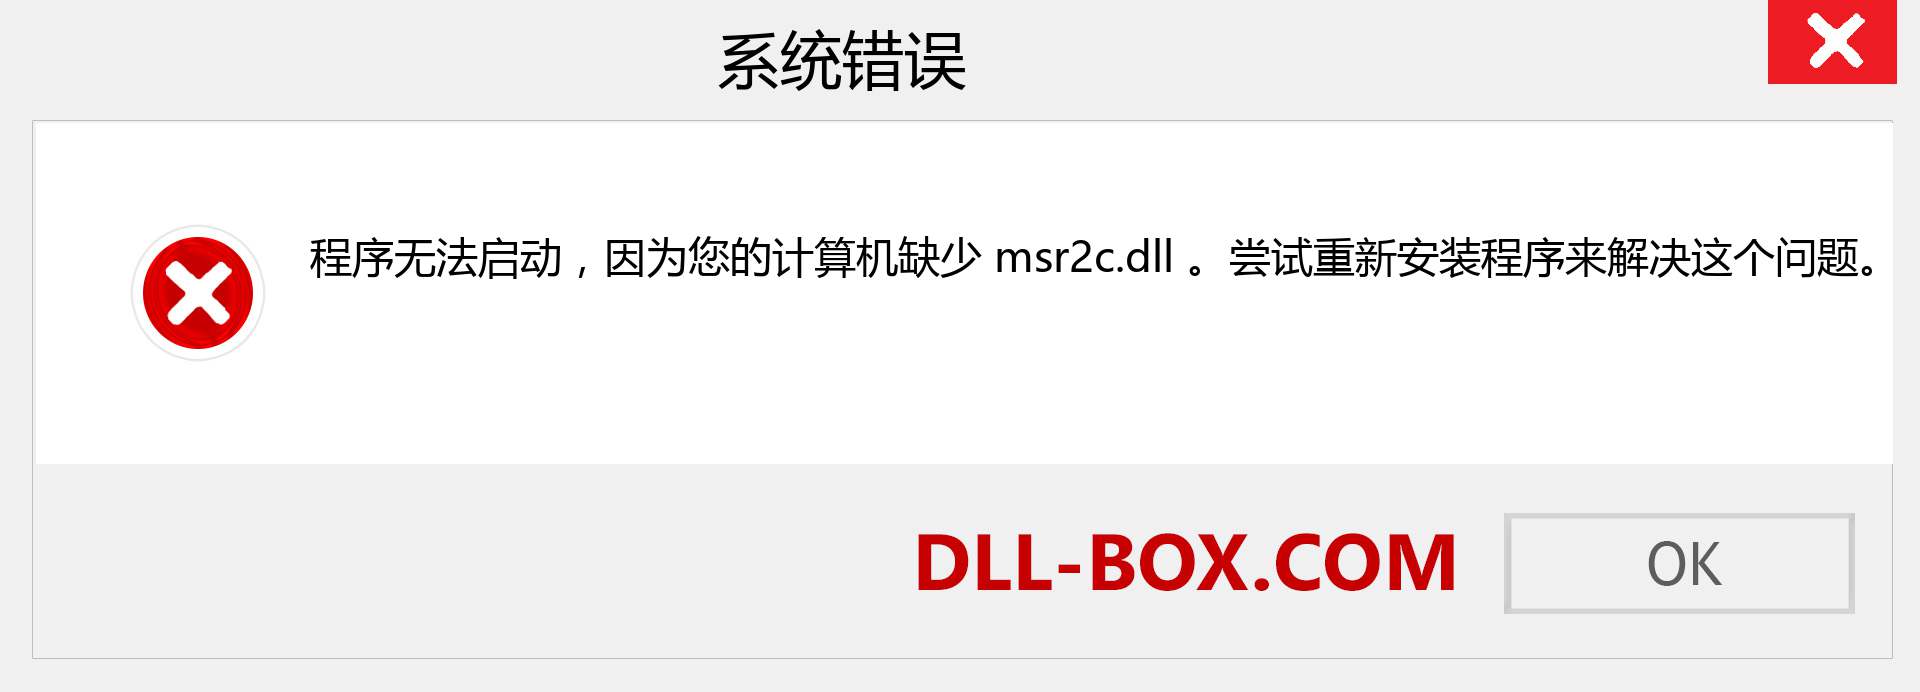 msr2c.dll 文件丢失？。 适用于 Windows 7、8、10 的下载 - 修复 Windows、照片、图像上的 msr2c dll 丢失错误